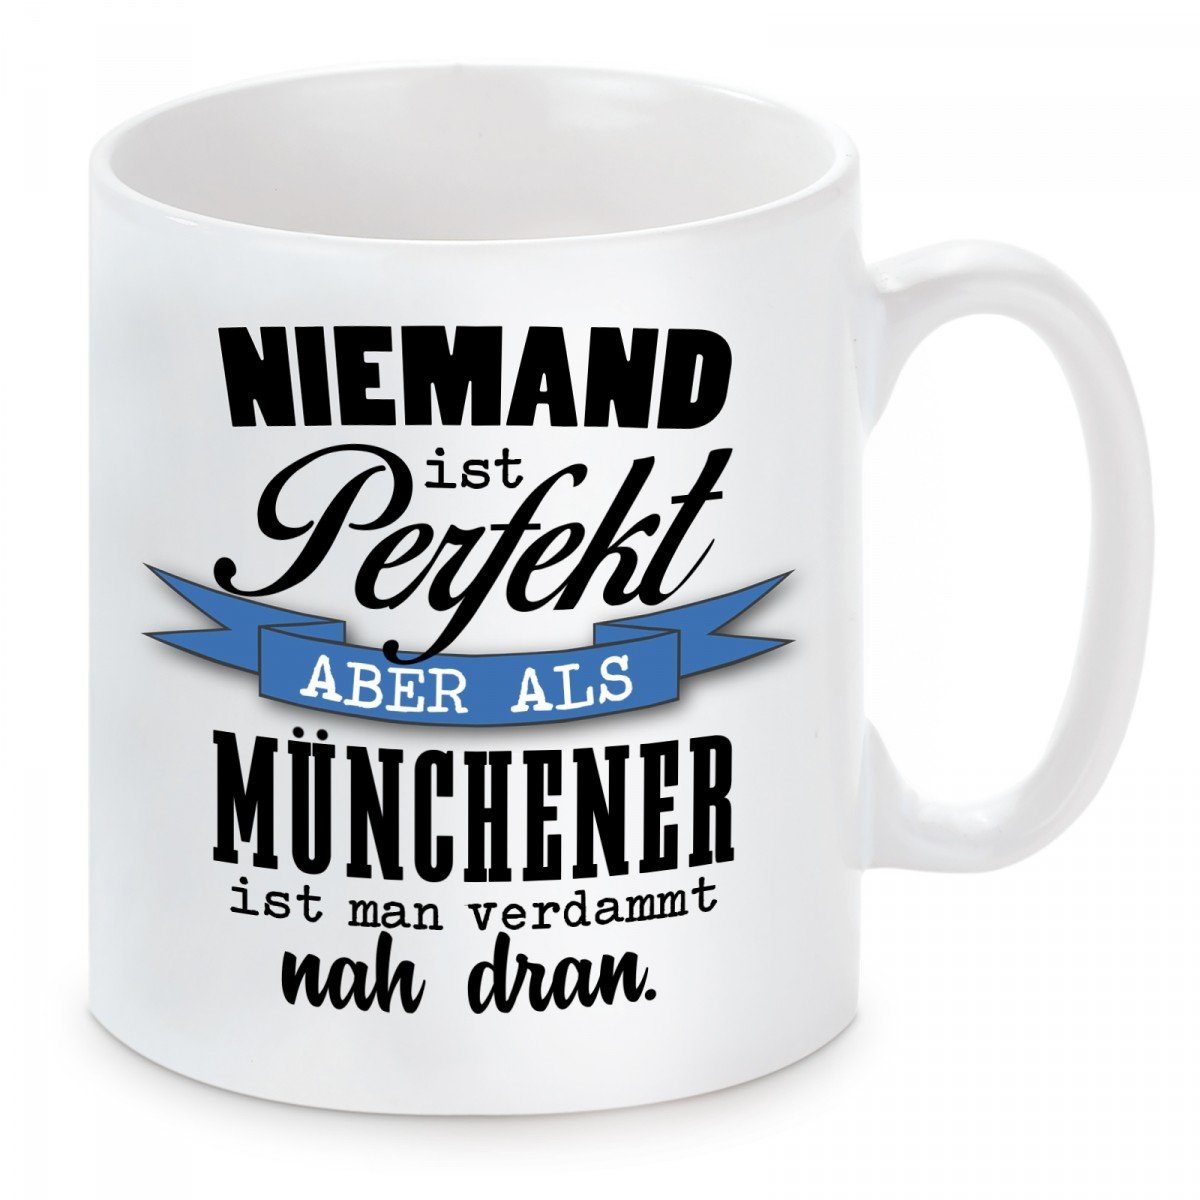 Herzbotschaft Tasse Kaffeebecher mit Keramik, perfekt Motiv Niemand spülmaschinenfest mikrowellengeeignet als Kaffeetasse aber und Münchener, ist